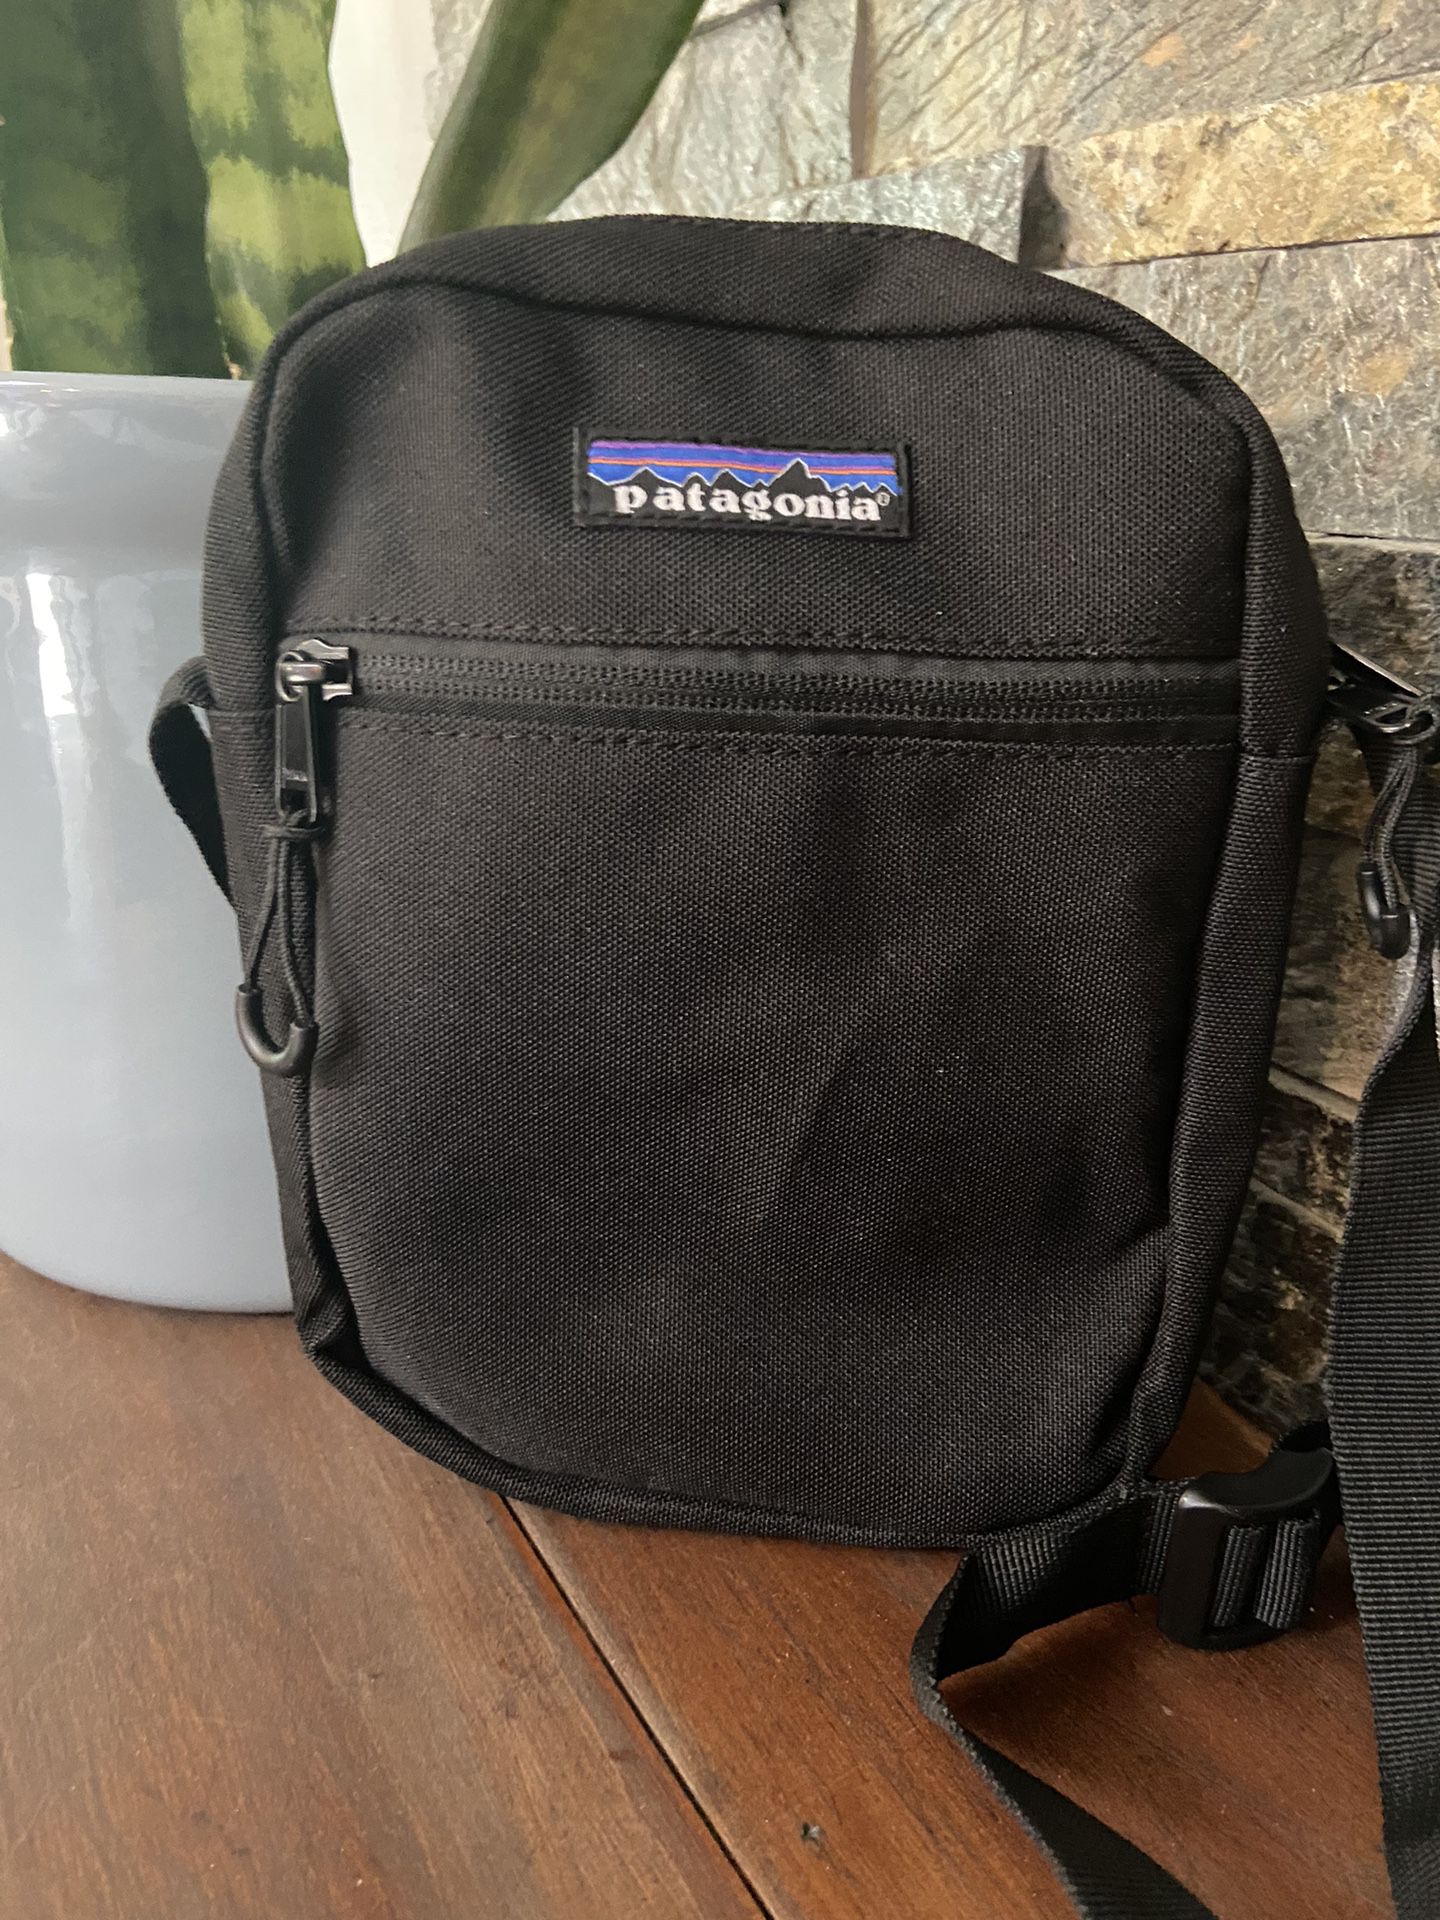 Patagonia Zipper Bag